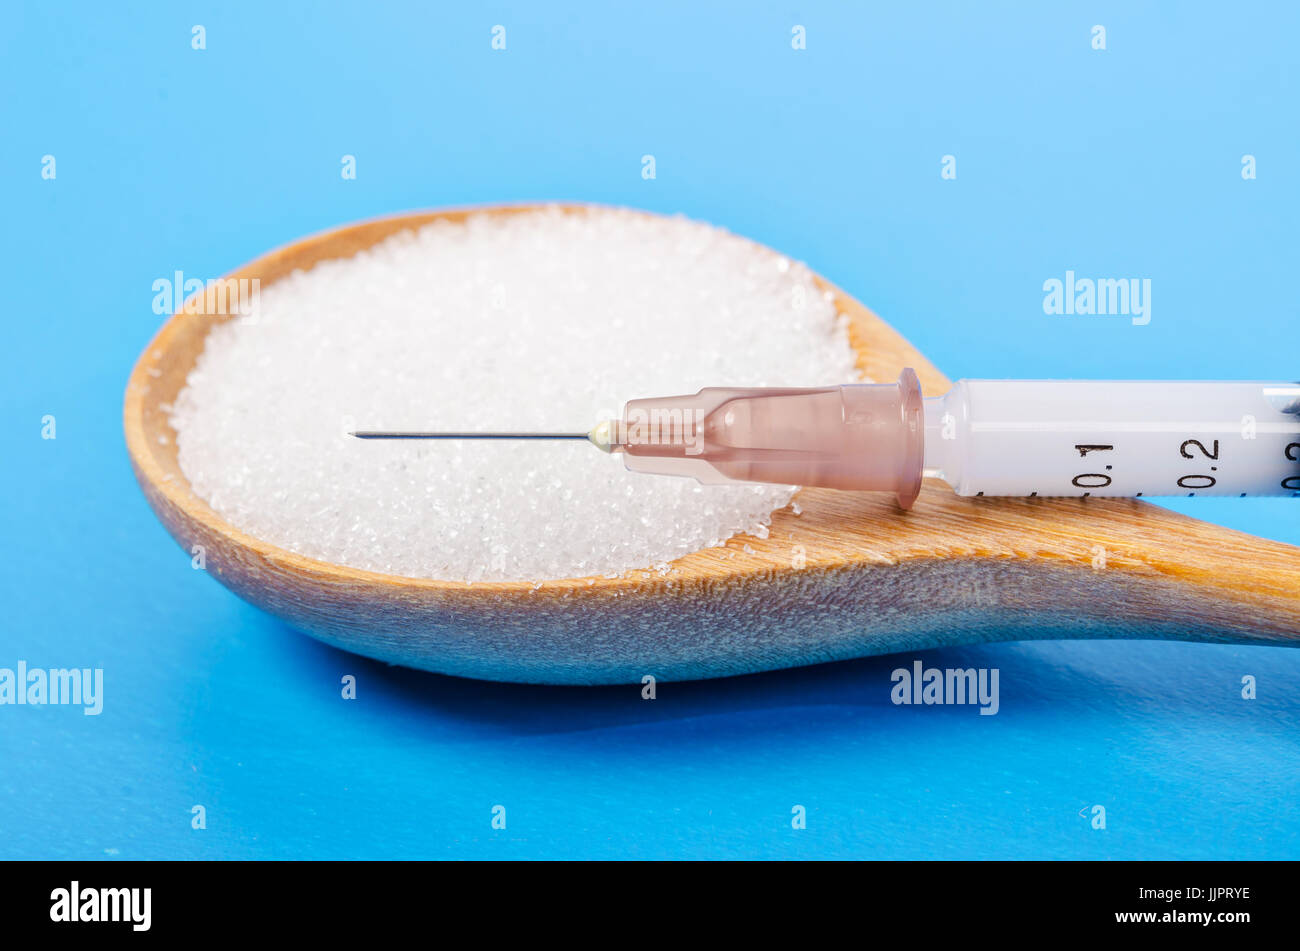 L'insuline dans la seringue et le sucre blanc en cuillère en bois sur fond bleu (diabète) Banque D'Images